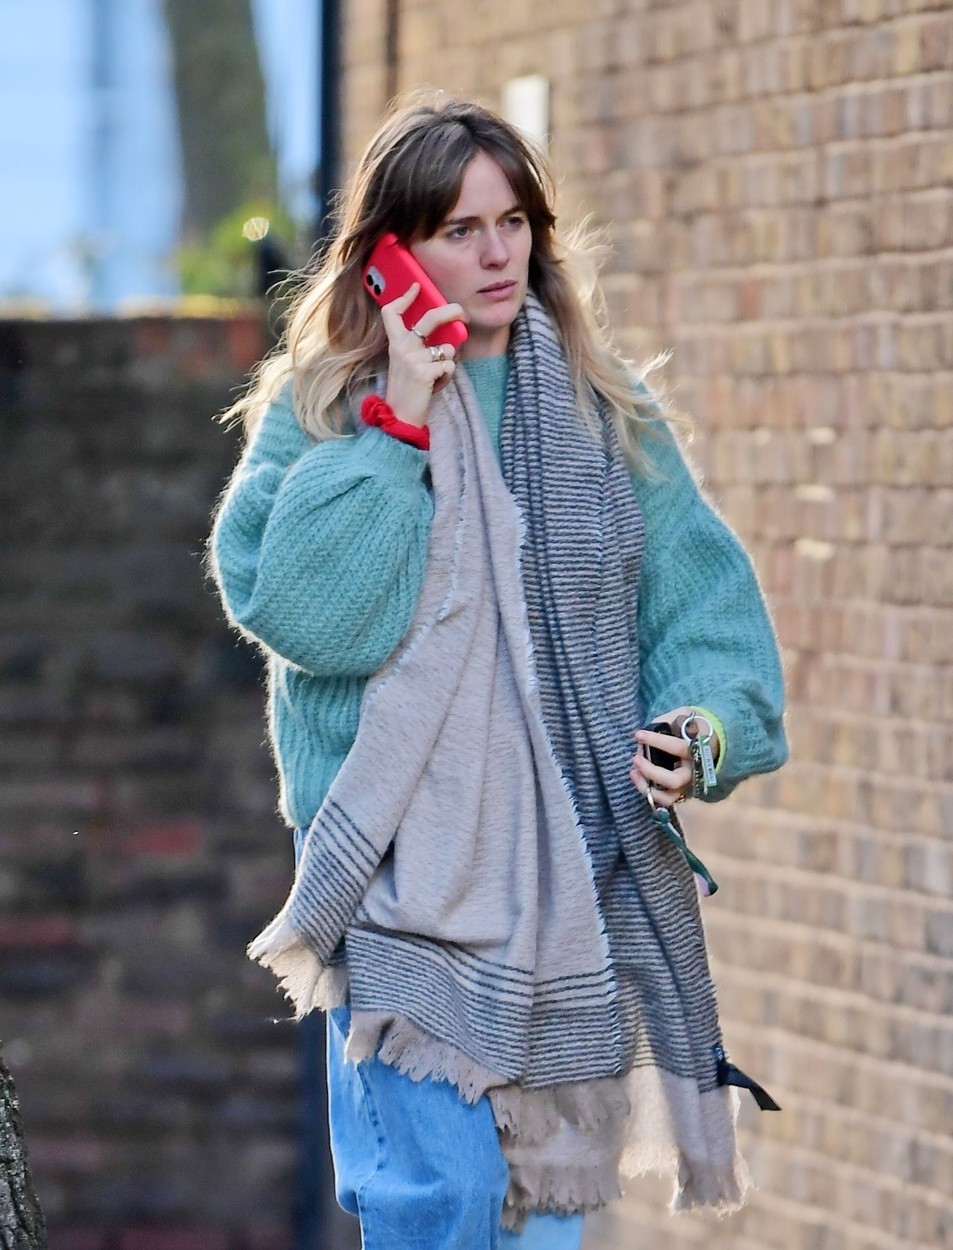 Cressida Bonas, fotografiată în timp ce vorbește la telefon, pe stradă, îmbrăcată casual